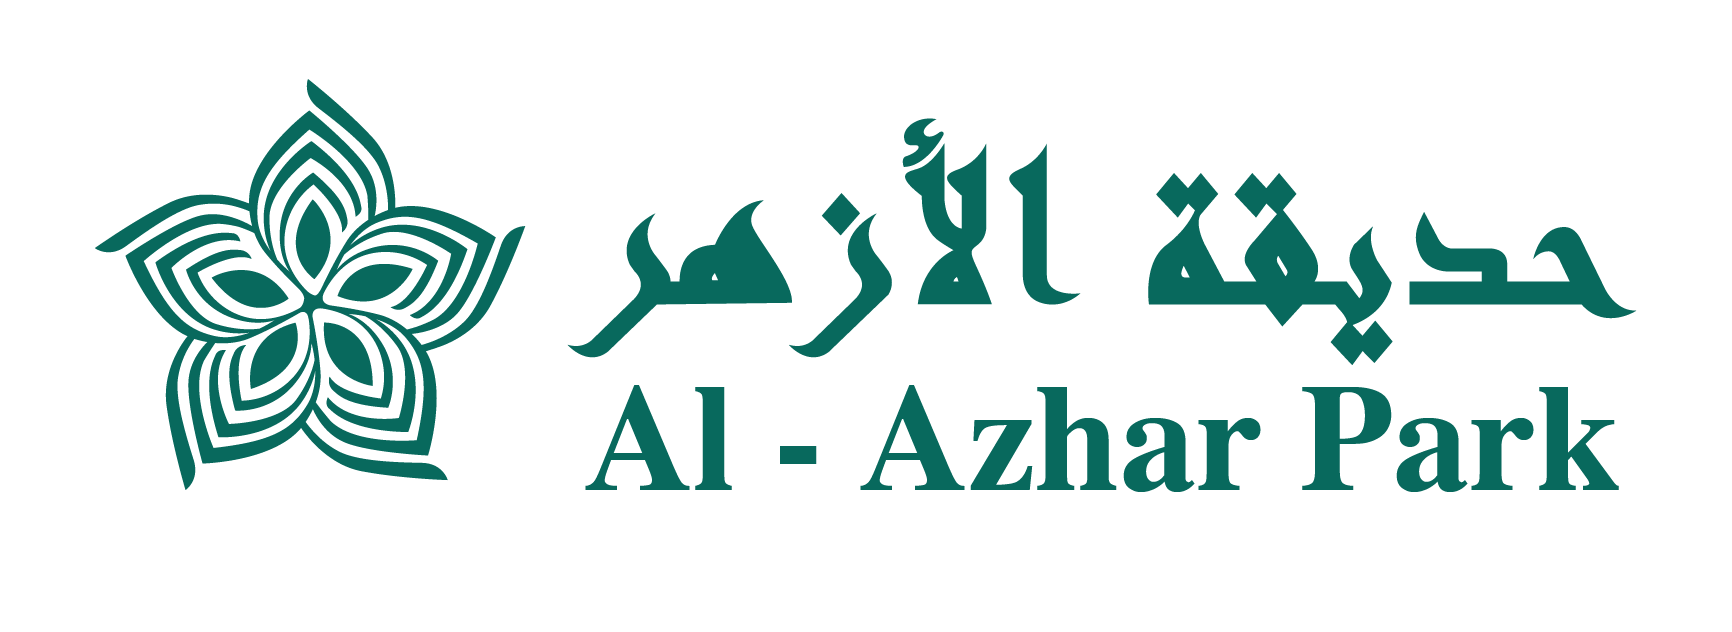 Al-Azhar Park logo